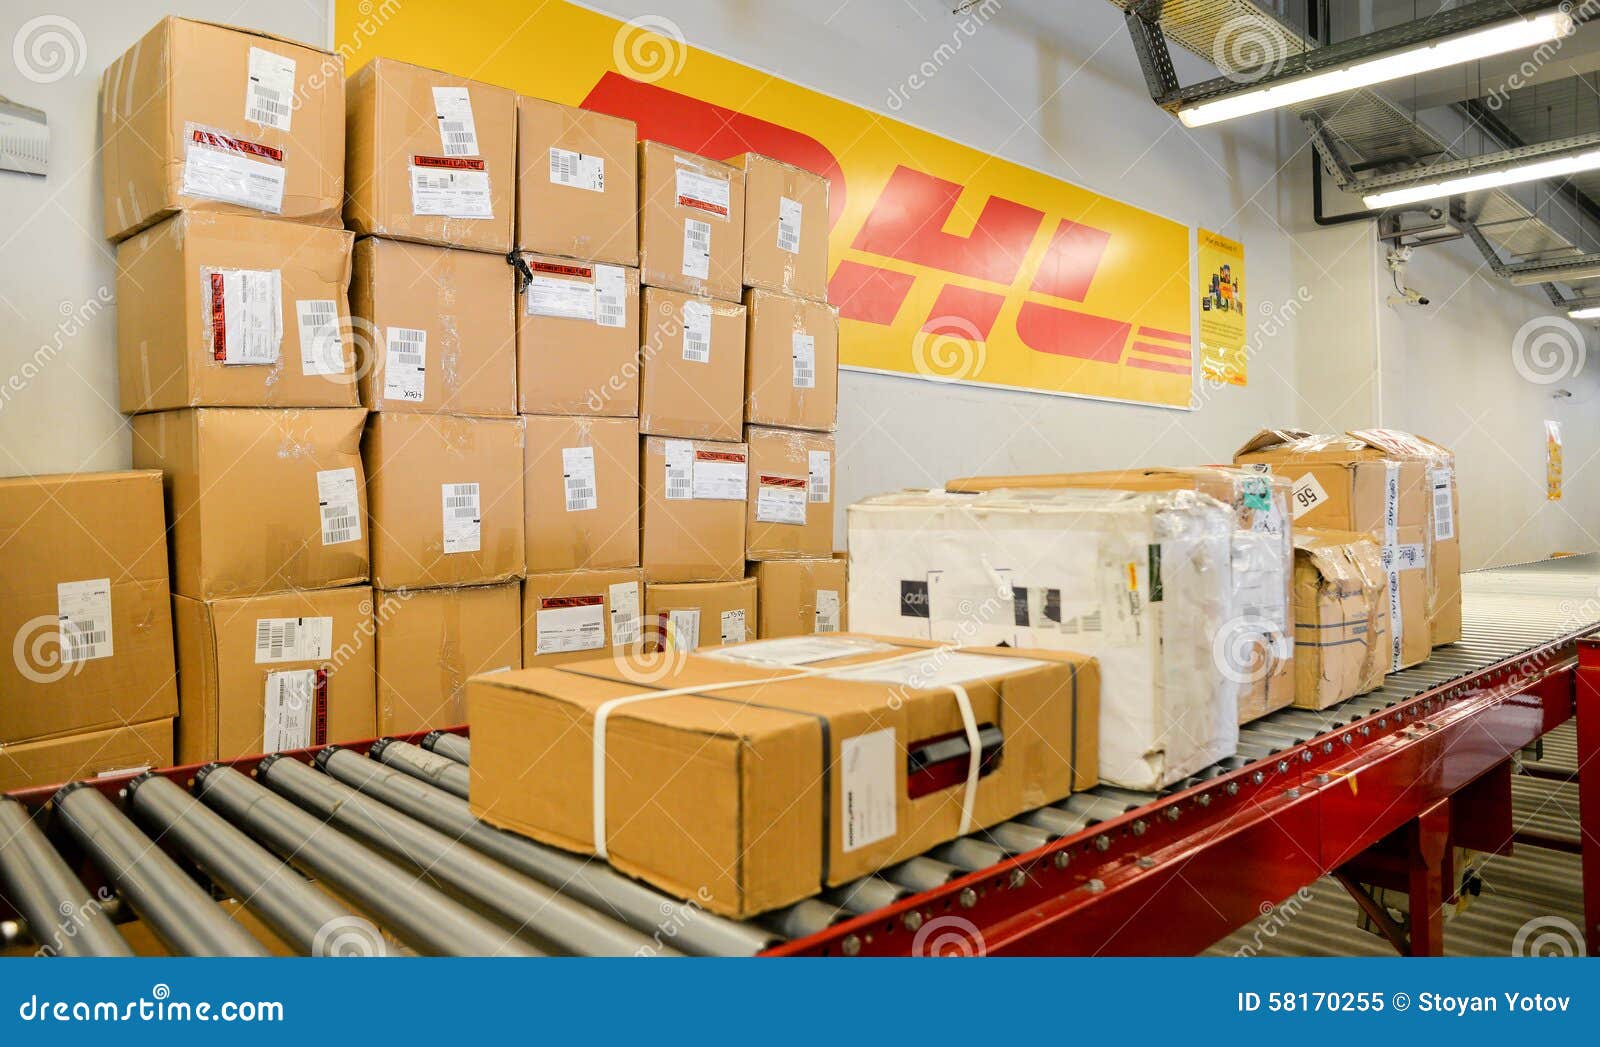 Грейпфруты упаковывают в ящики. DHL упаковка коробки. Посылка DHL упаковка. Короба DHL. DHL коробка доставка.